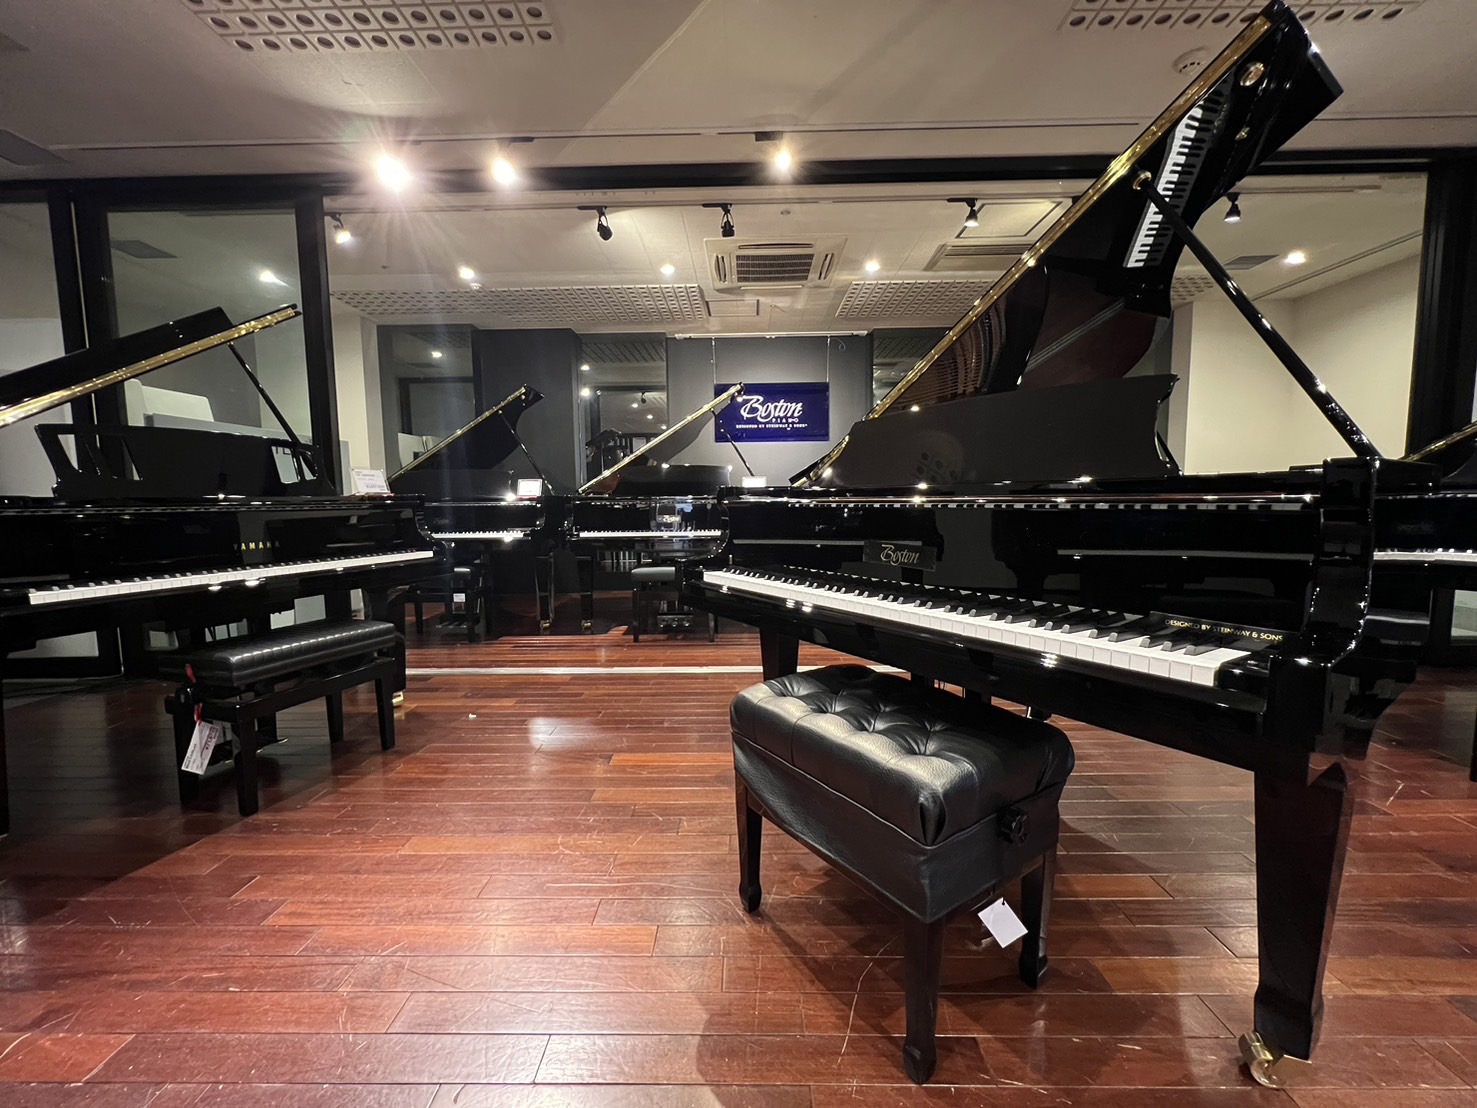 ピアノショールーム川崎店は、Bostonピアノの正規特約店です。 スタインウェイの設計思想を反映させ、日本の浜松市でつくられたボストンピアノは、スタインウェイの繊細かつ伸びやかな音色を引継ぎつつ、驚くほどのダイナミクスを表現できる、極上のピアノです。 店頭では経験豊富な技術者による管理を徹底して行っ […]